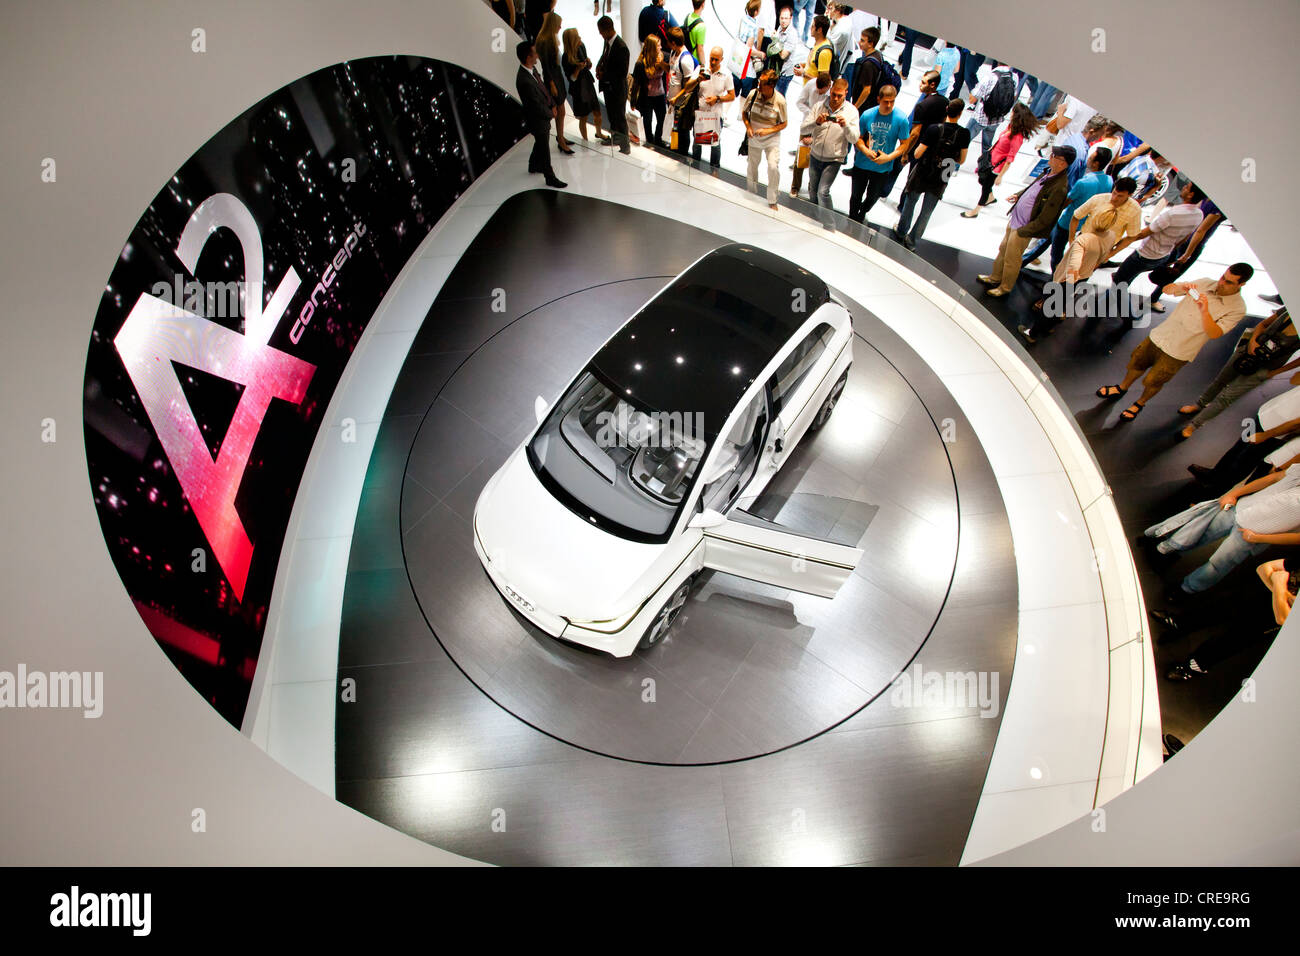 Studie und Welt-premiere des Begriffs Audi A2, Audi AG, 64. Internationalen Automobilausstellung, IAA 2011, Frankfurt am Main, Hessen Stockfoto